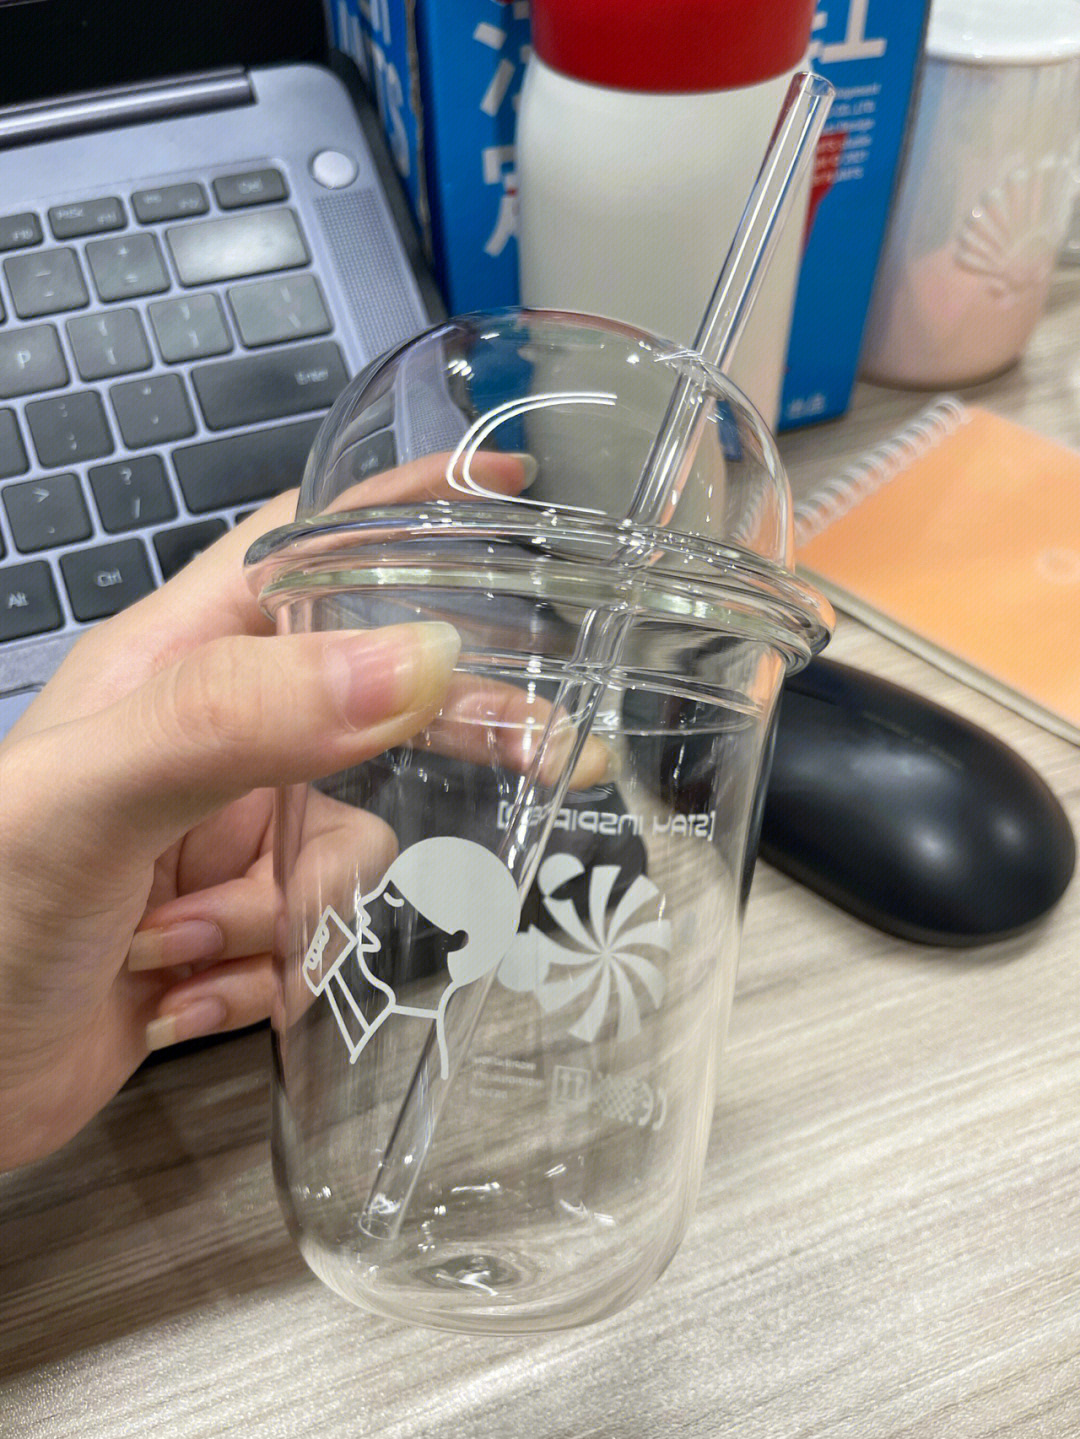 除了吸管是塑料的,盖子和杯是全玻璃的不过就是玻璃杯得供着